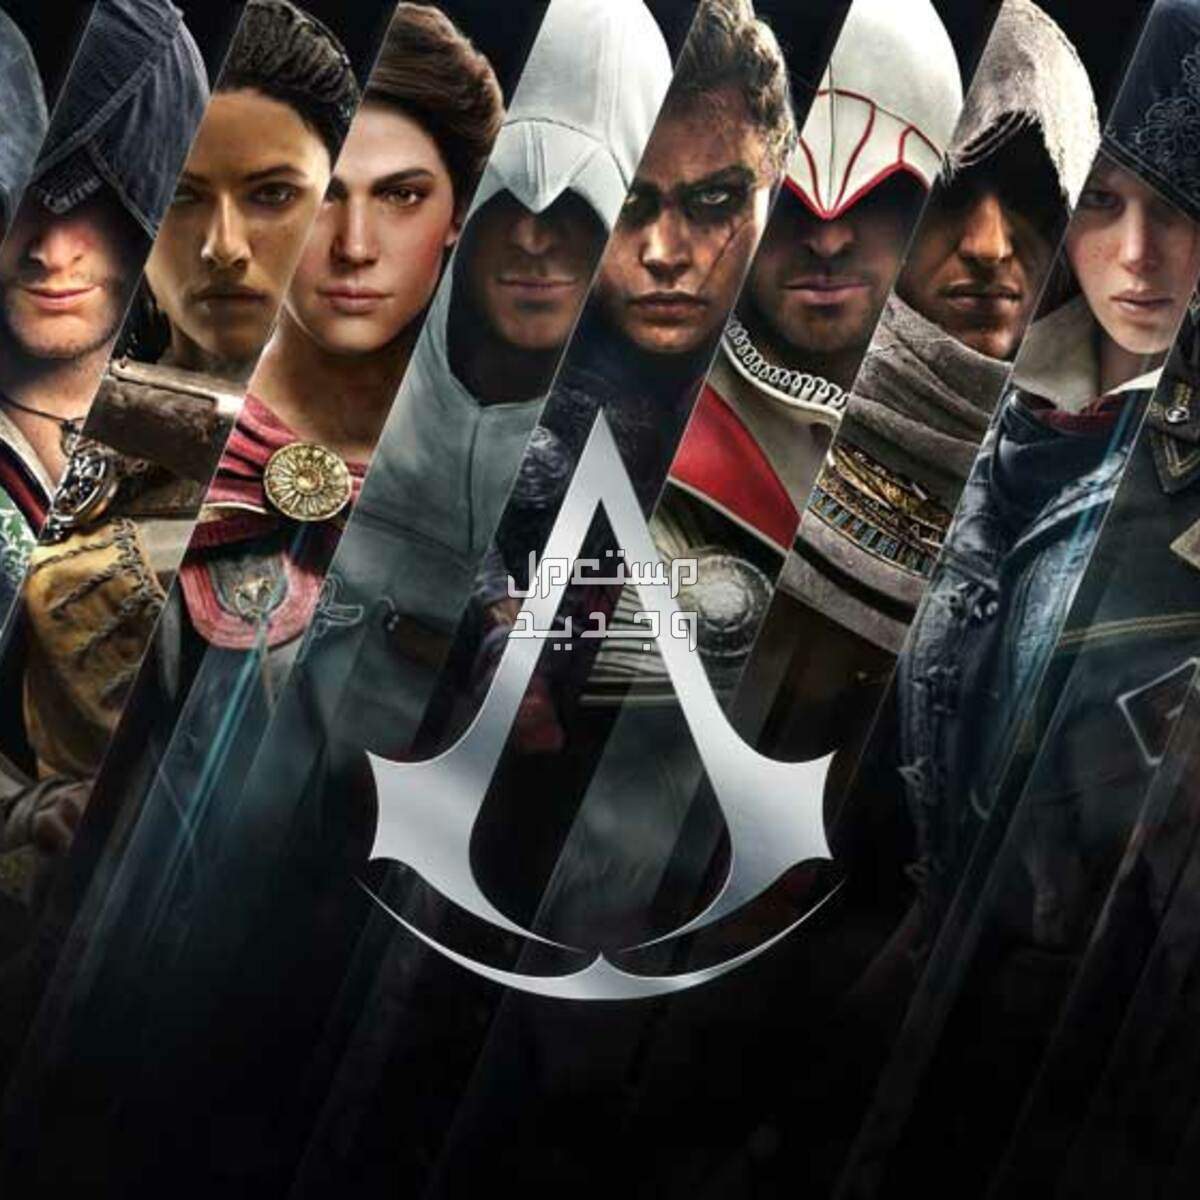 معك لابتوب ألعاب؟ تسلى و تعلم التاريخ مع Assassin's Creed في فلسطين سلسلة ألعاب أساسنز كريد